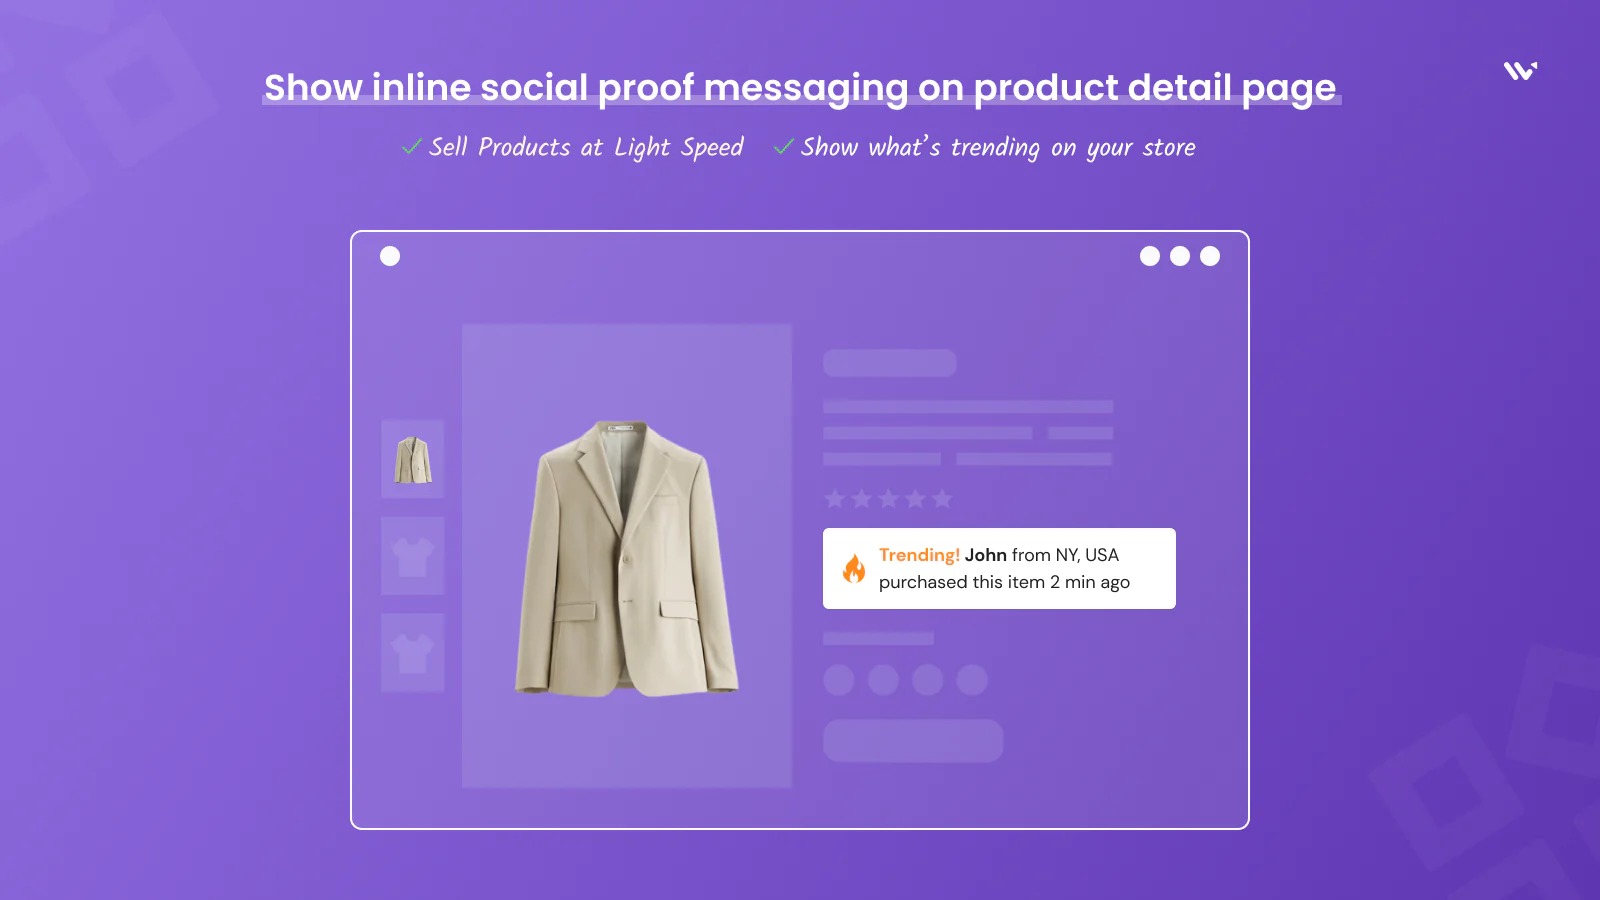 Vis inline social proof beskeder på produktkatalog side